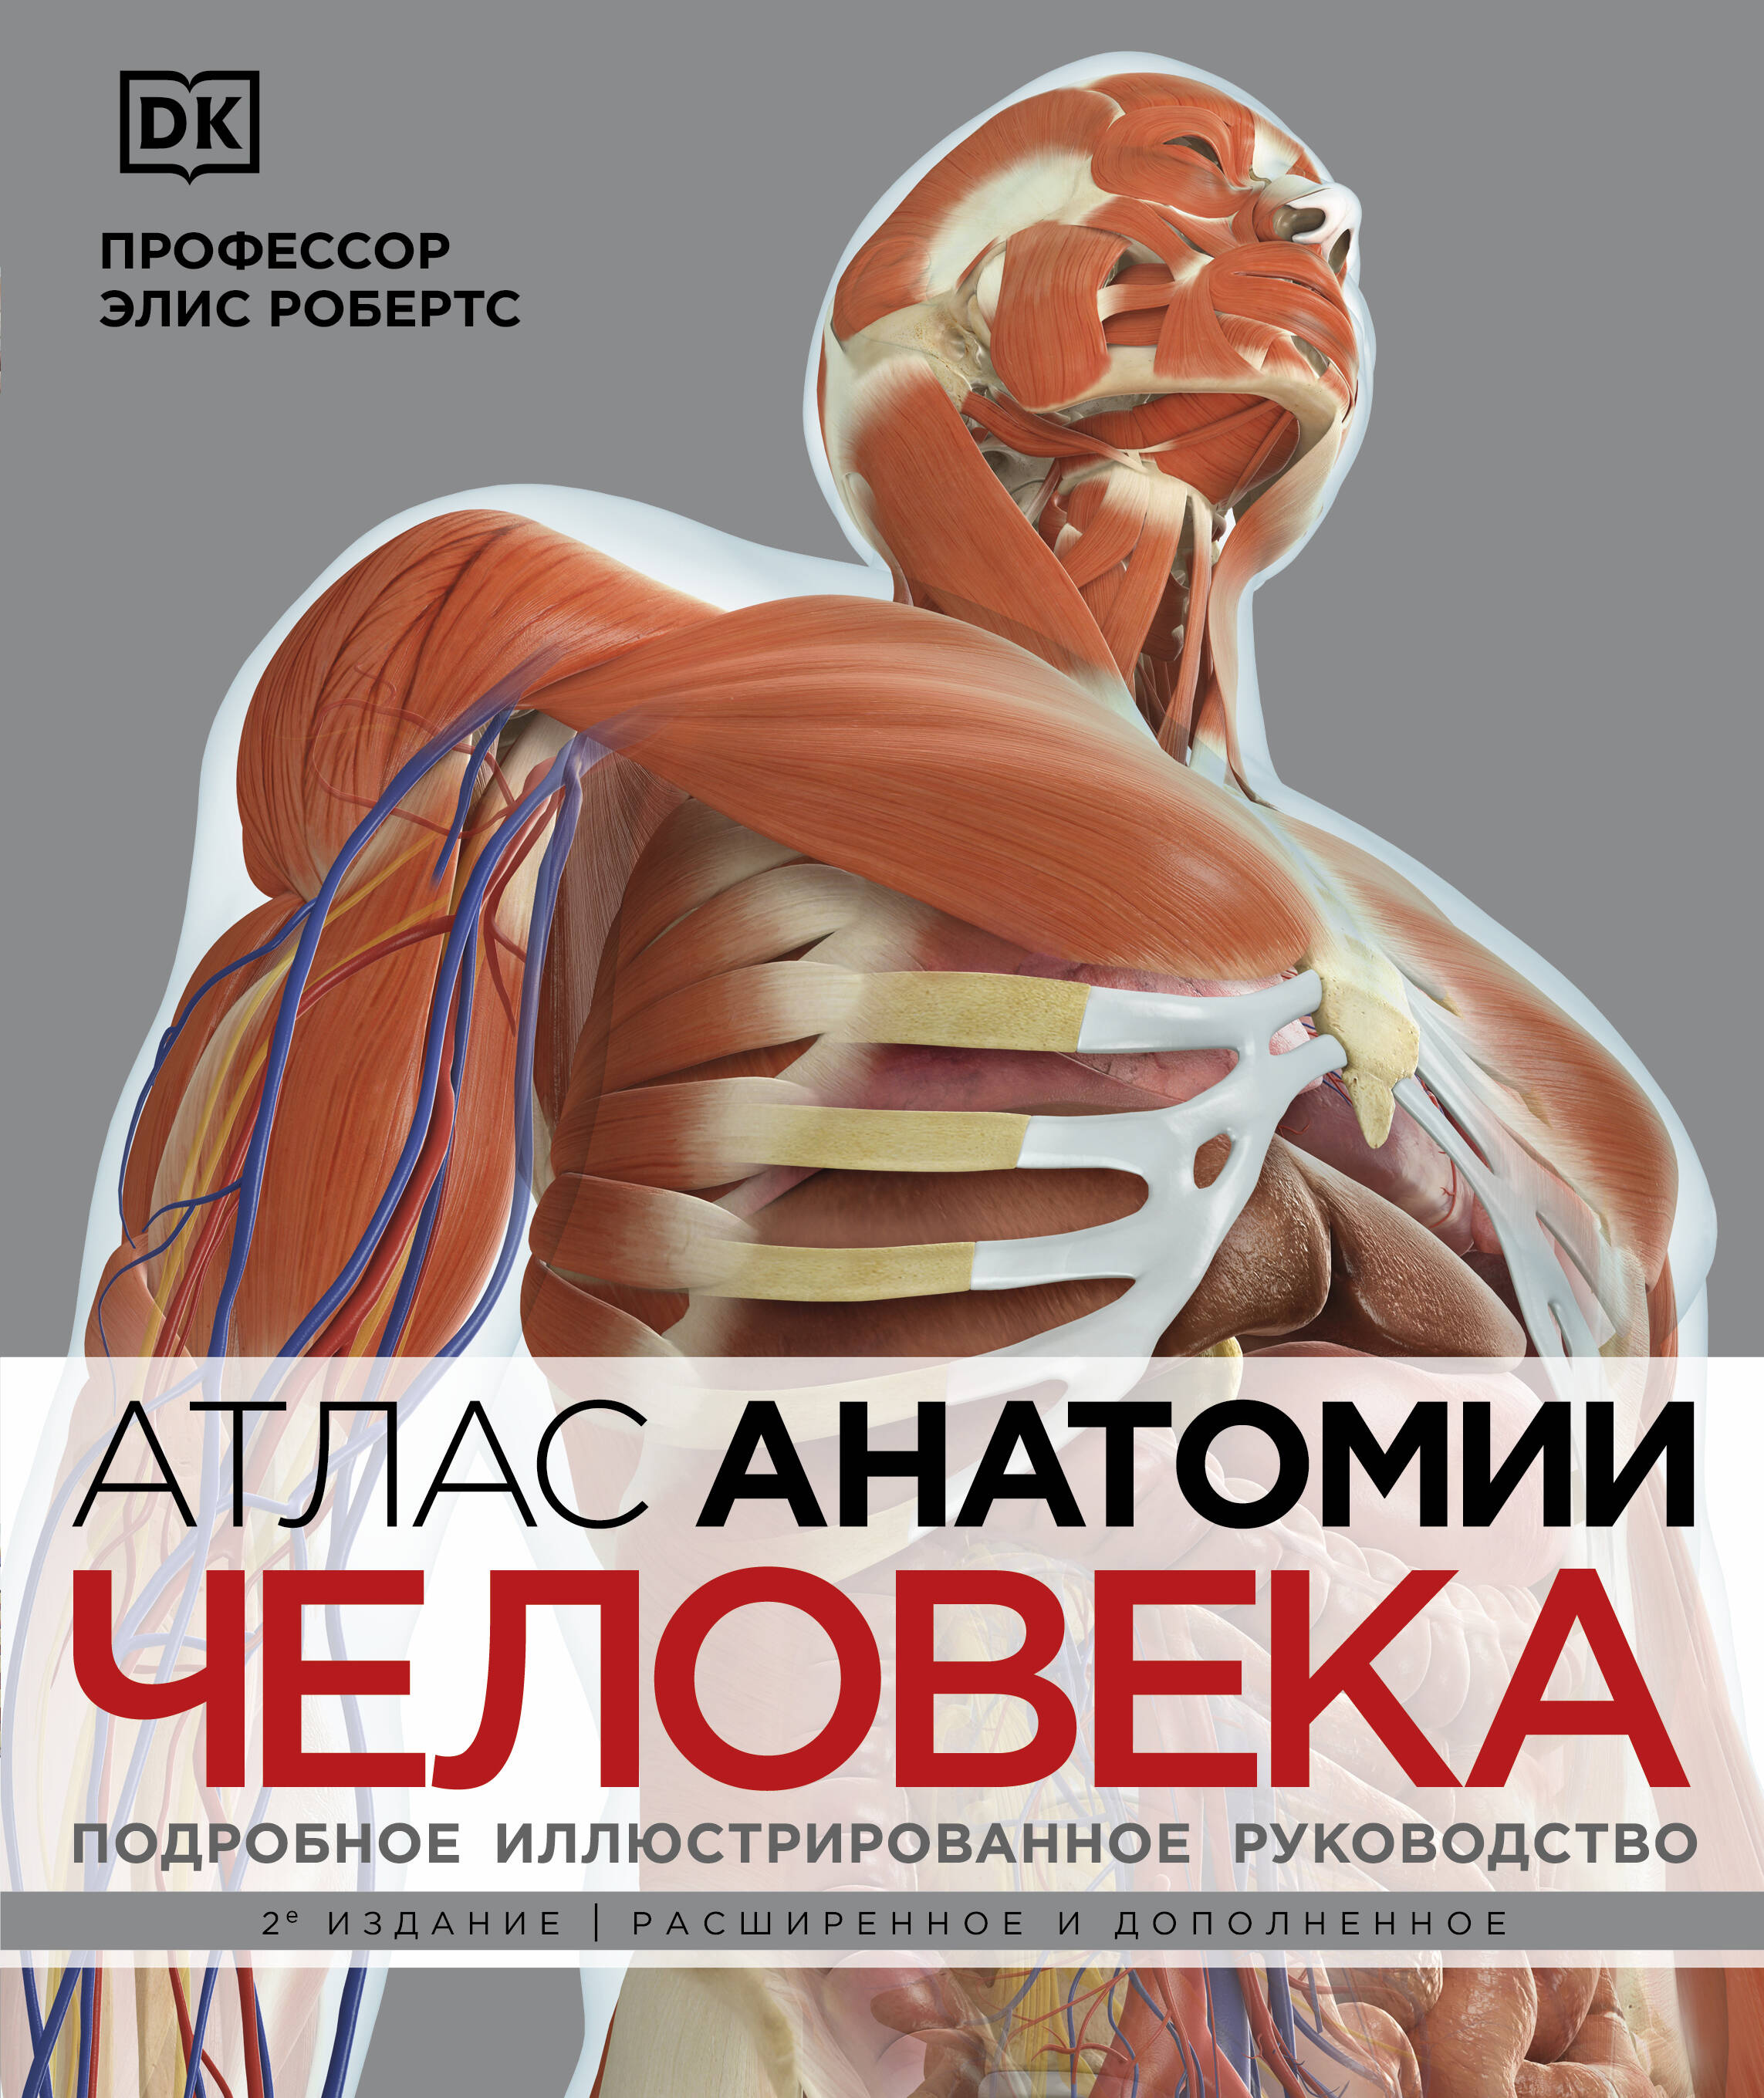 Робертс Элис - Атлас анатомии человека. Подробное иллюстрированное руководство